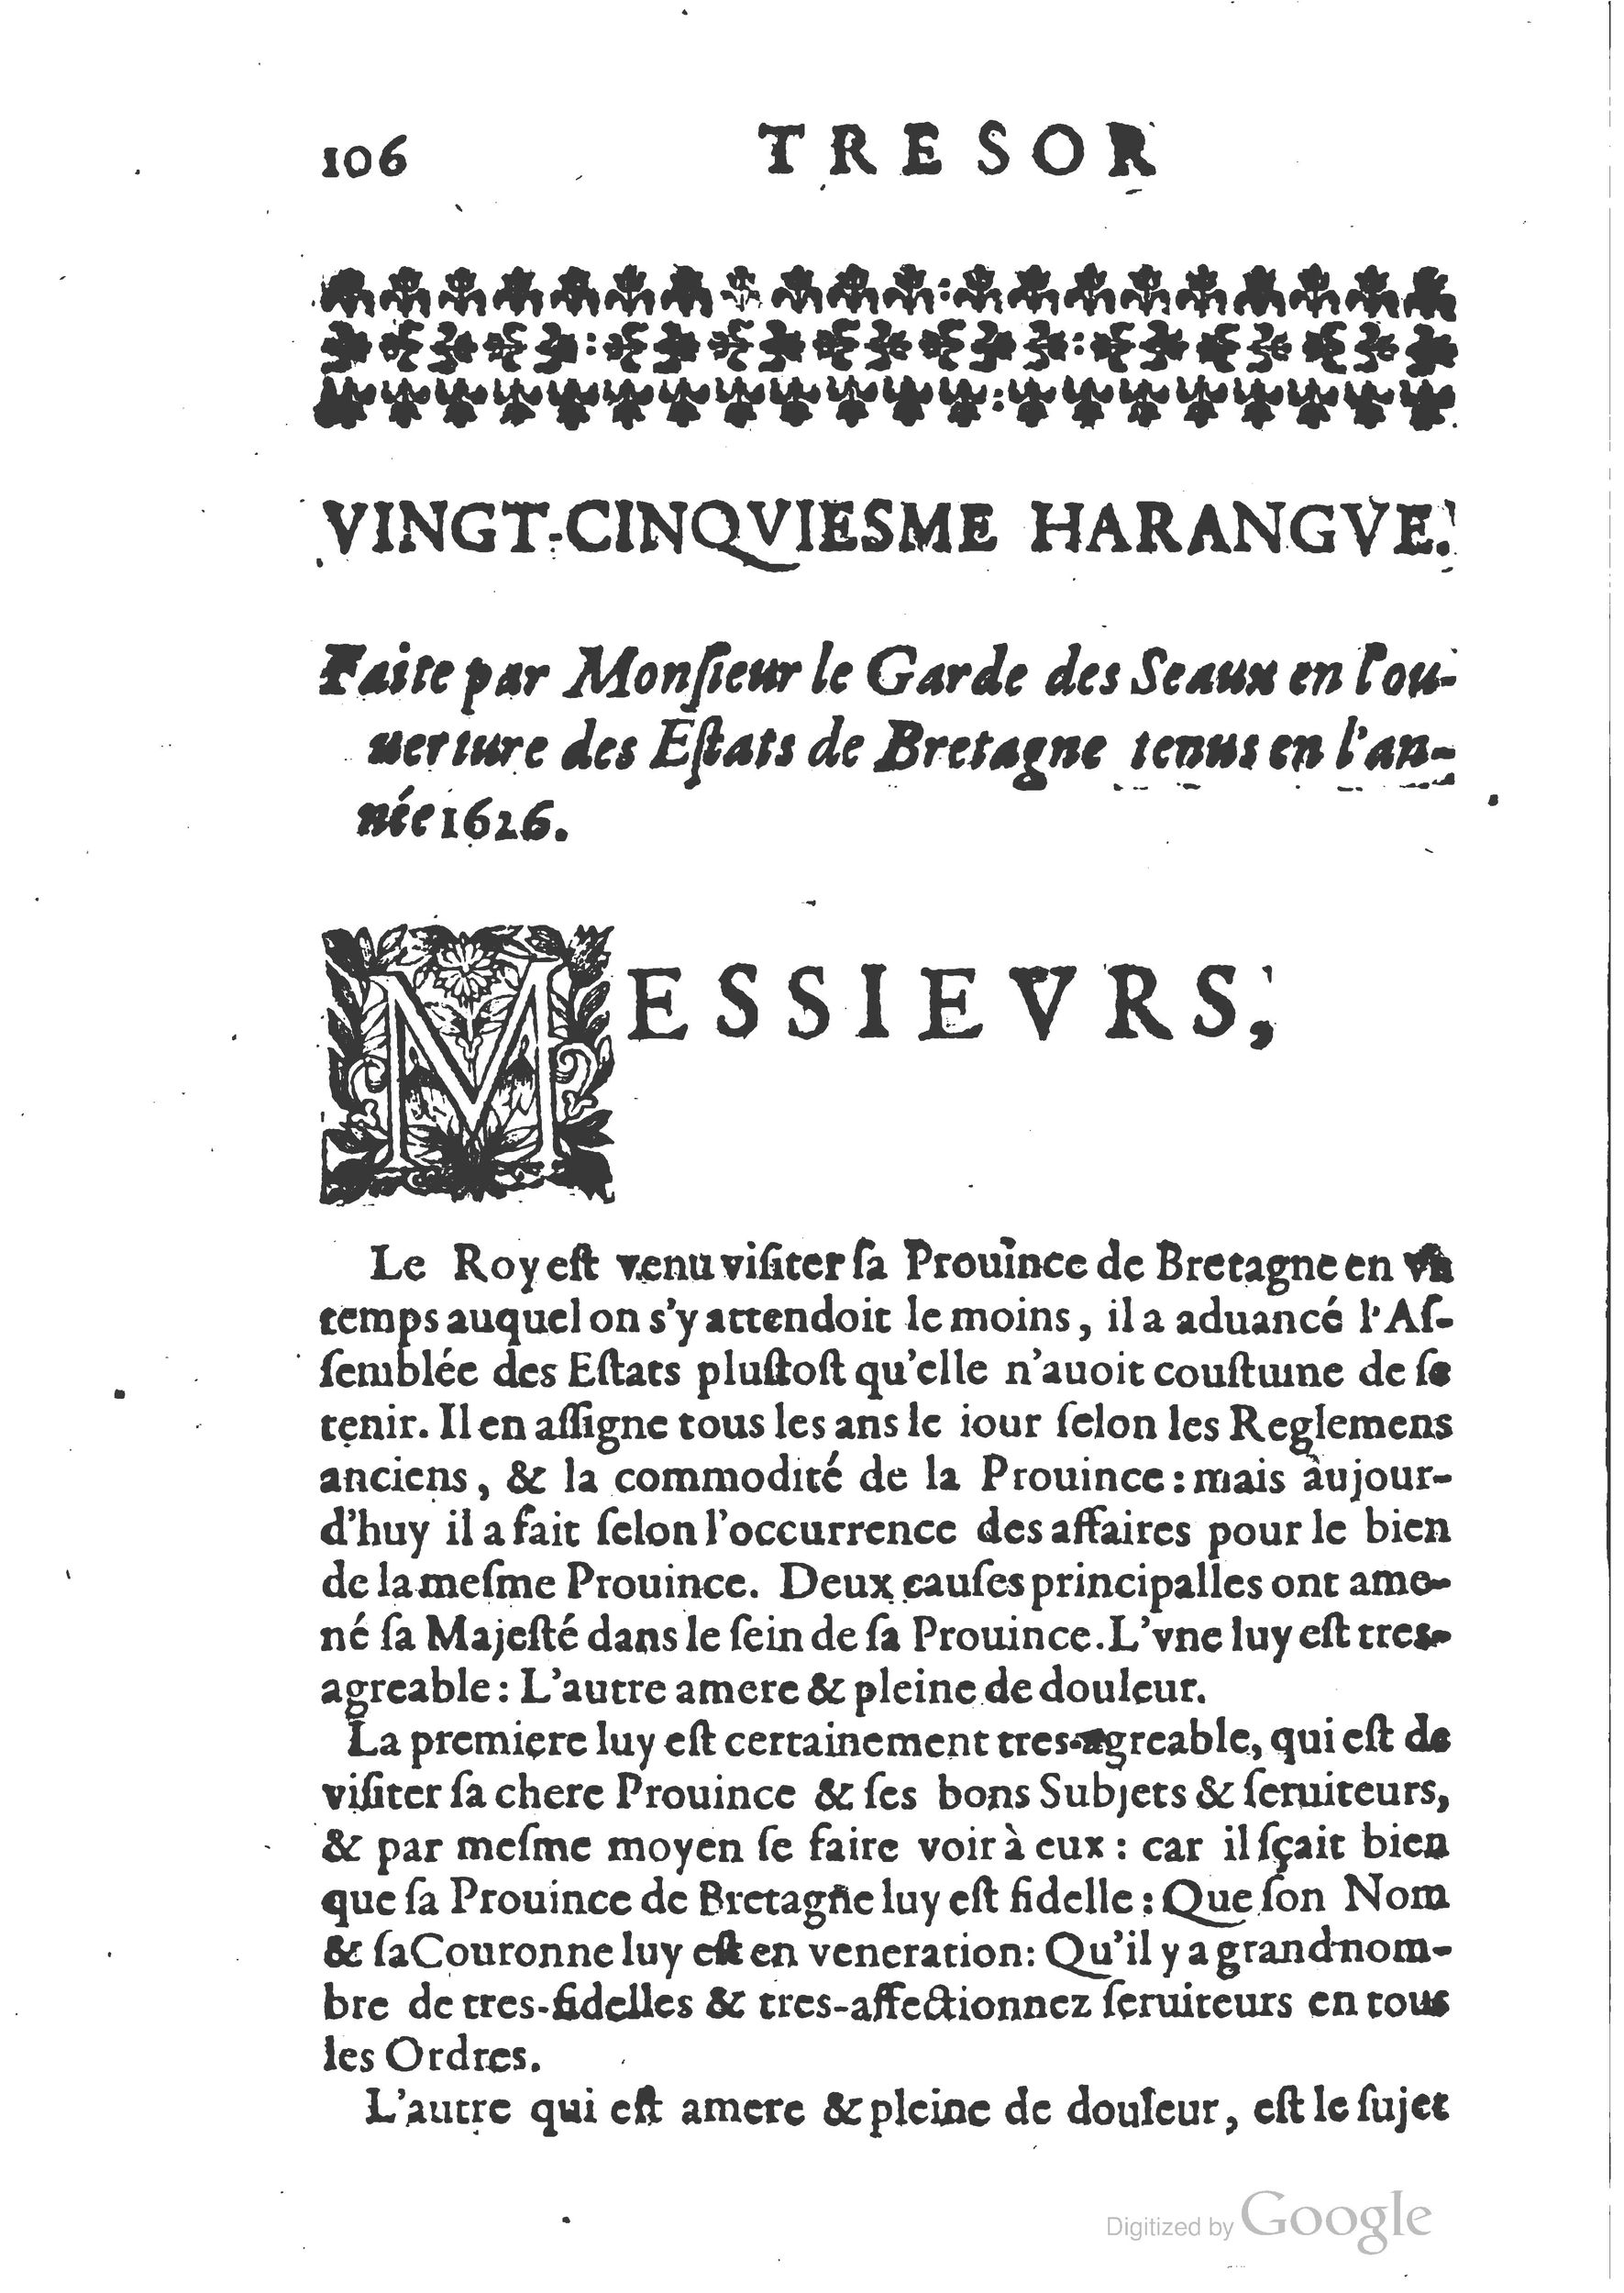 1654 Trésor des harangues, remontrances et oraisons funèbres Robin_BM Lyon_Page_125.jpg